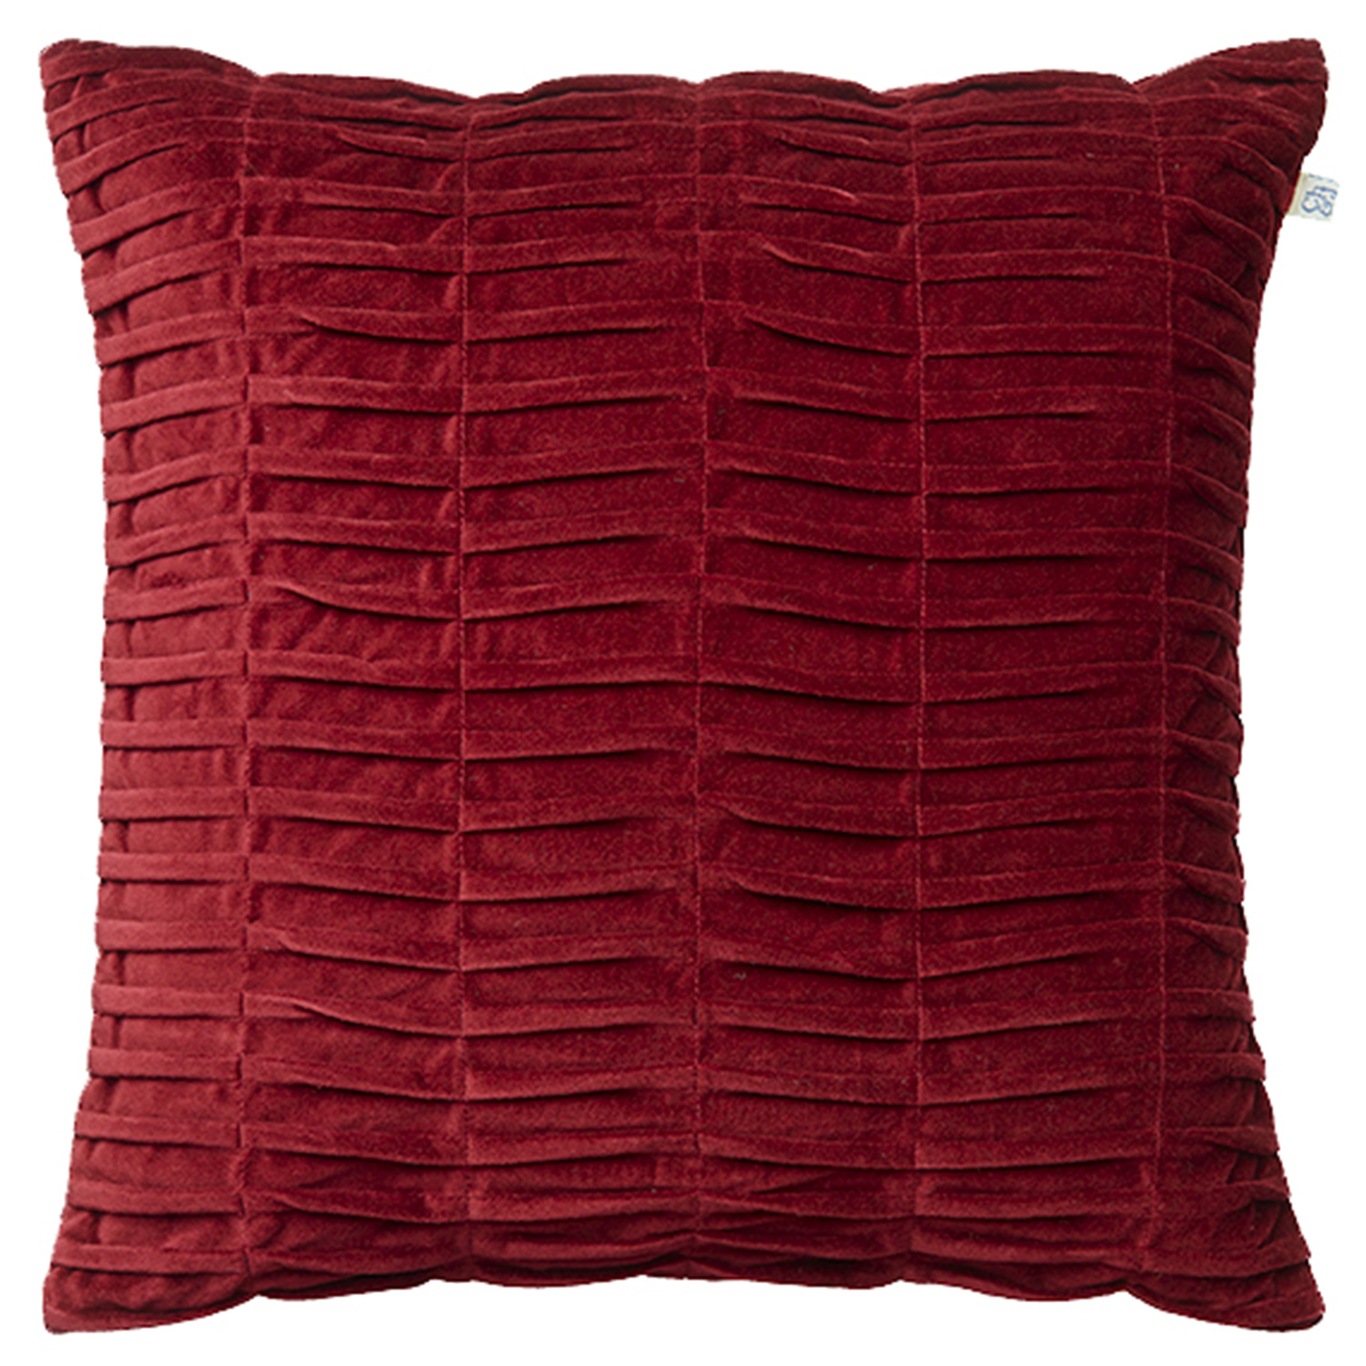 Rishi Cushion Cover Ruby, 50x50 cm